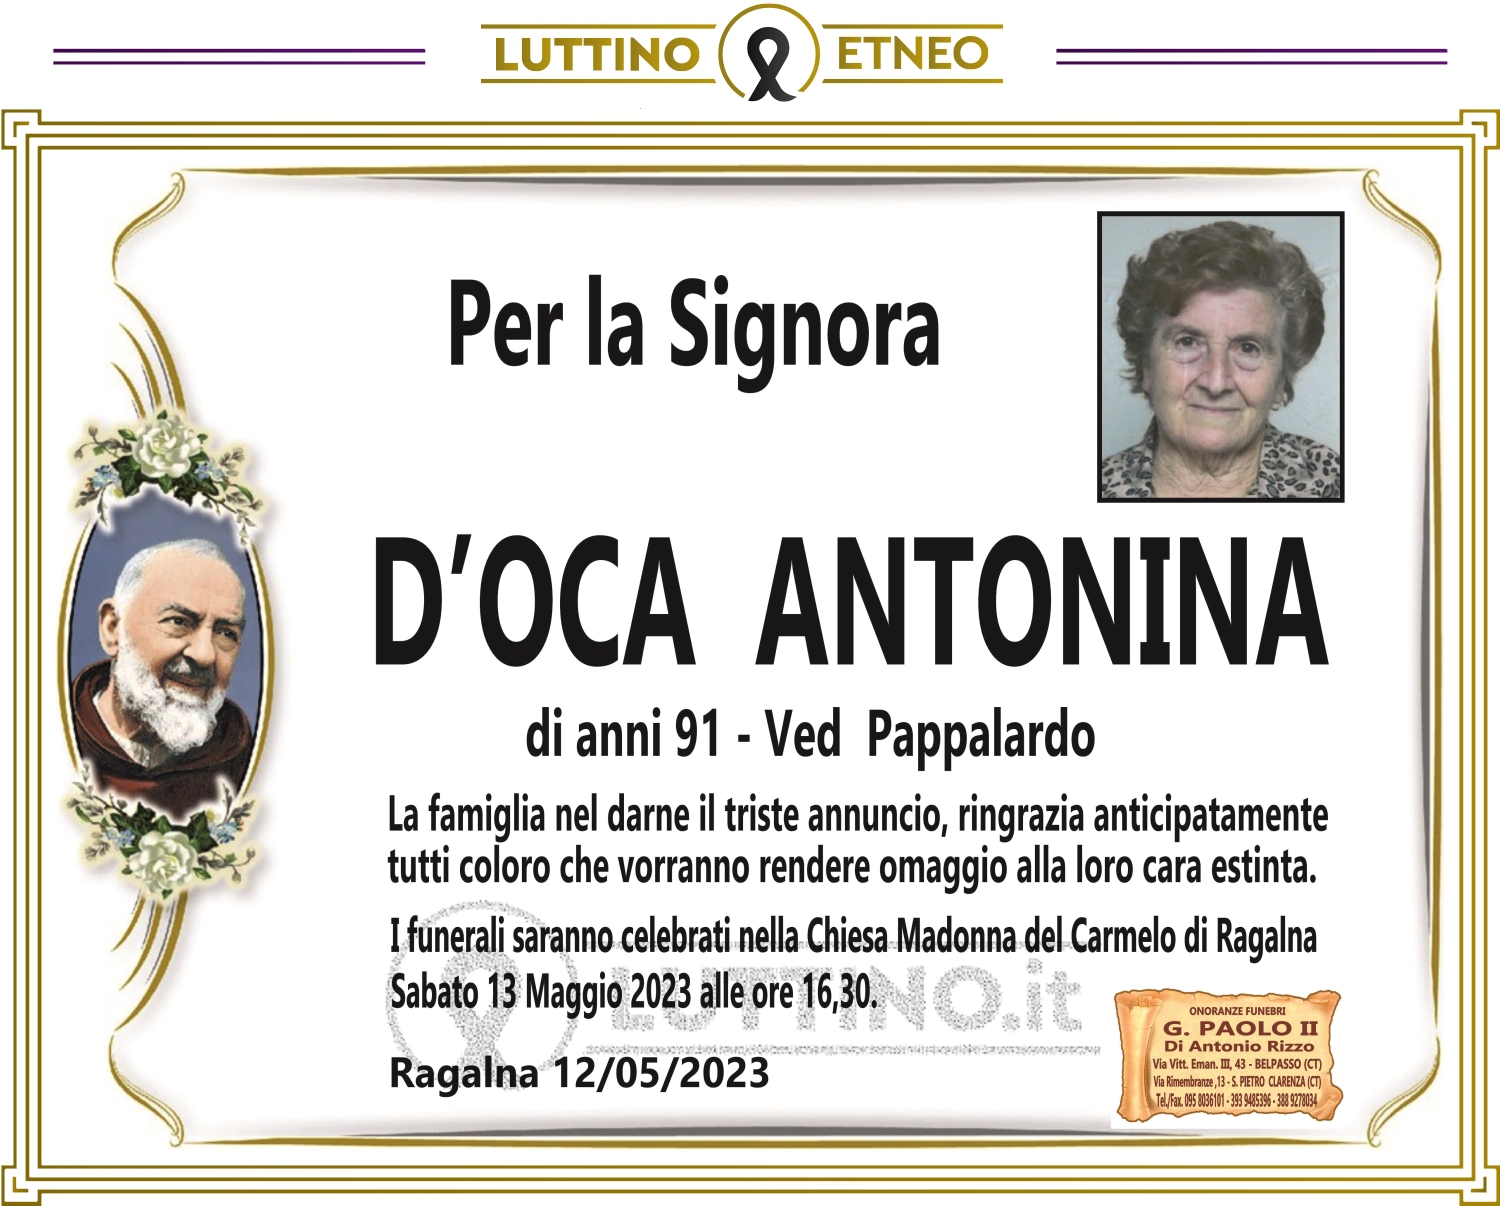 Antonina D'Oca